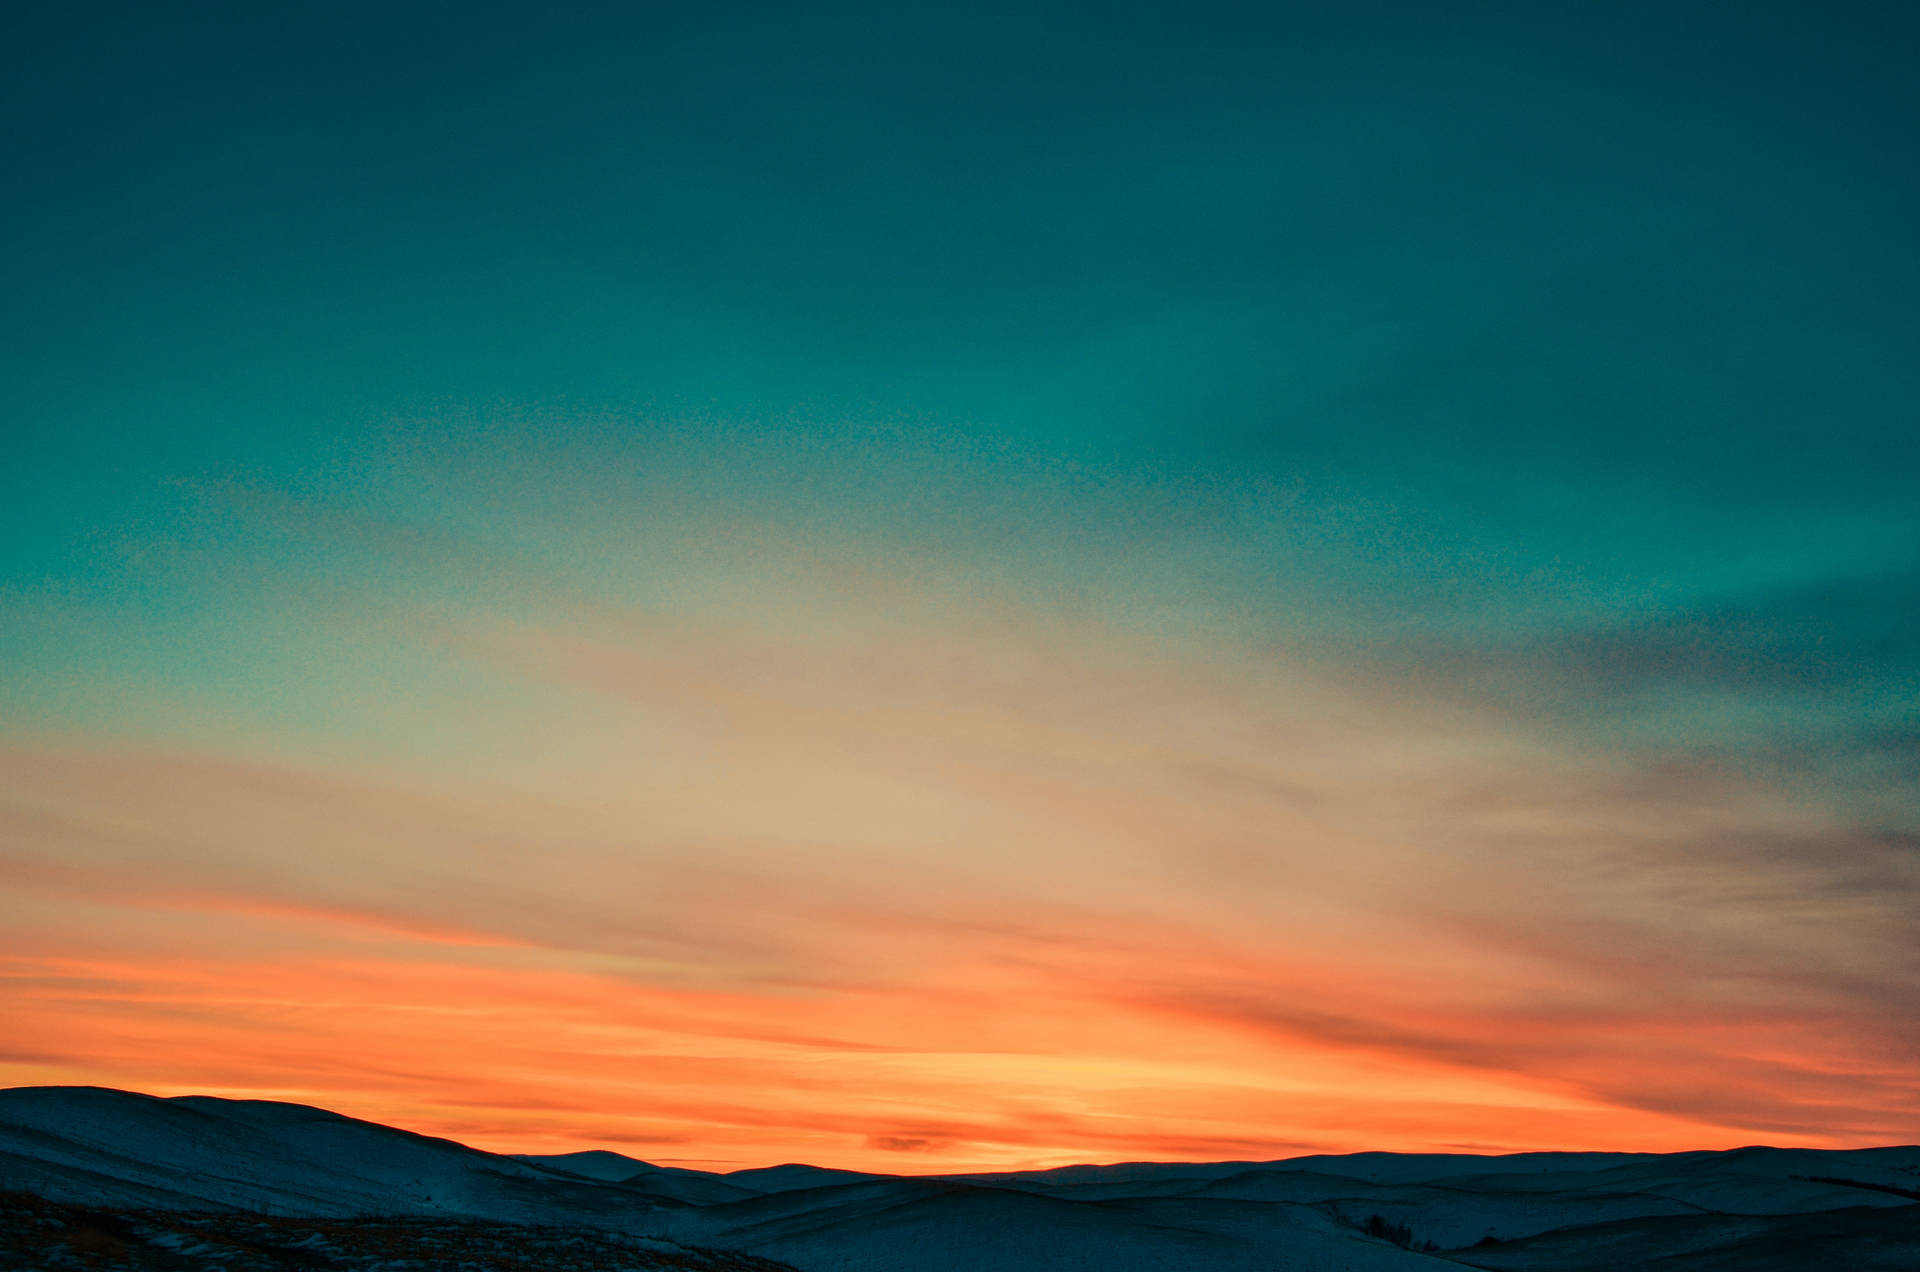 Stunning Sunset Scenery On 4k Iphone Wallpaper